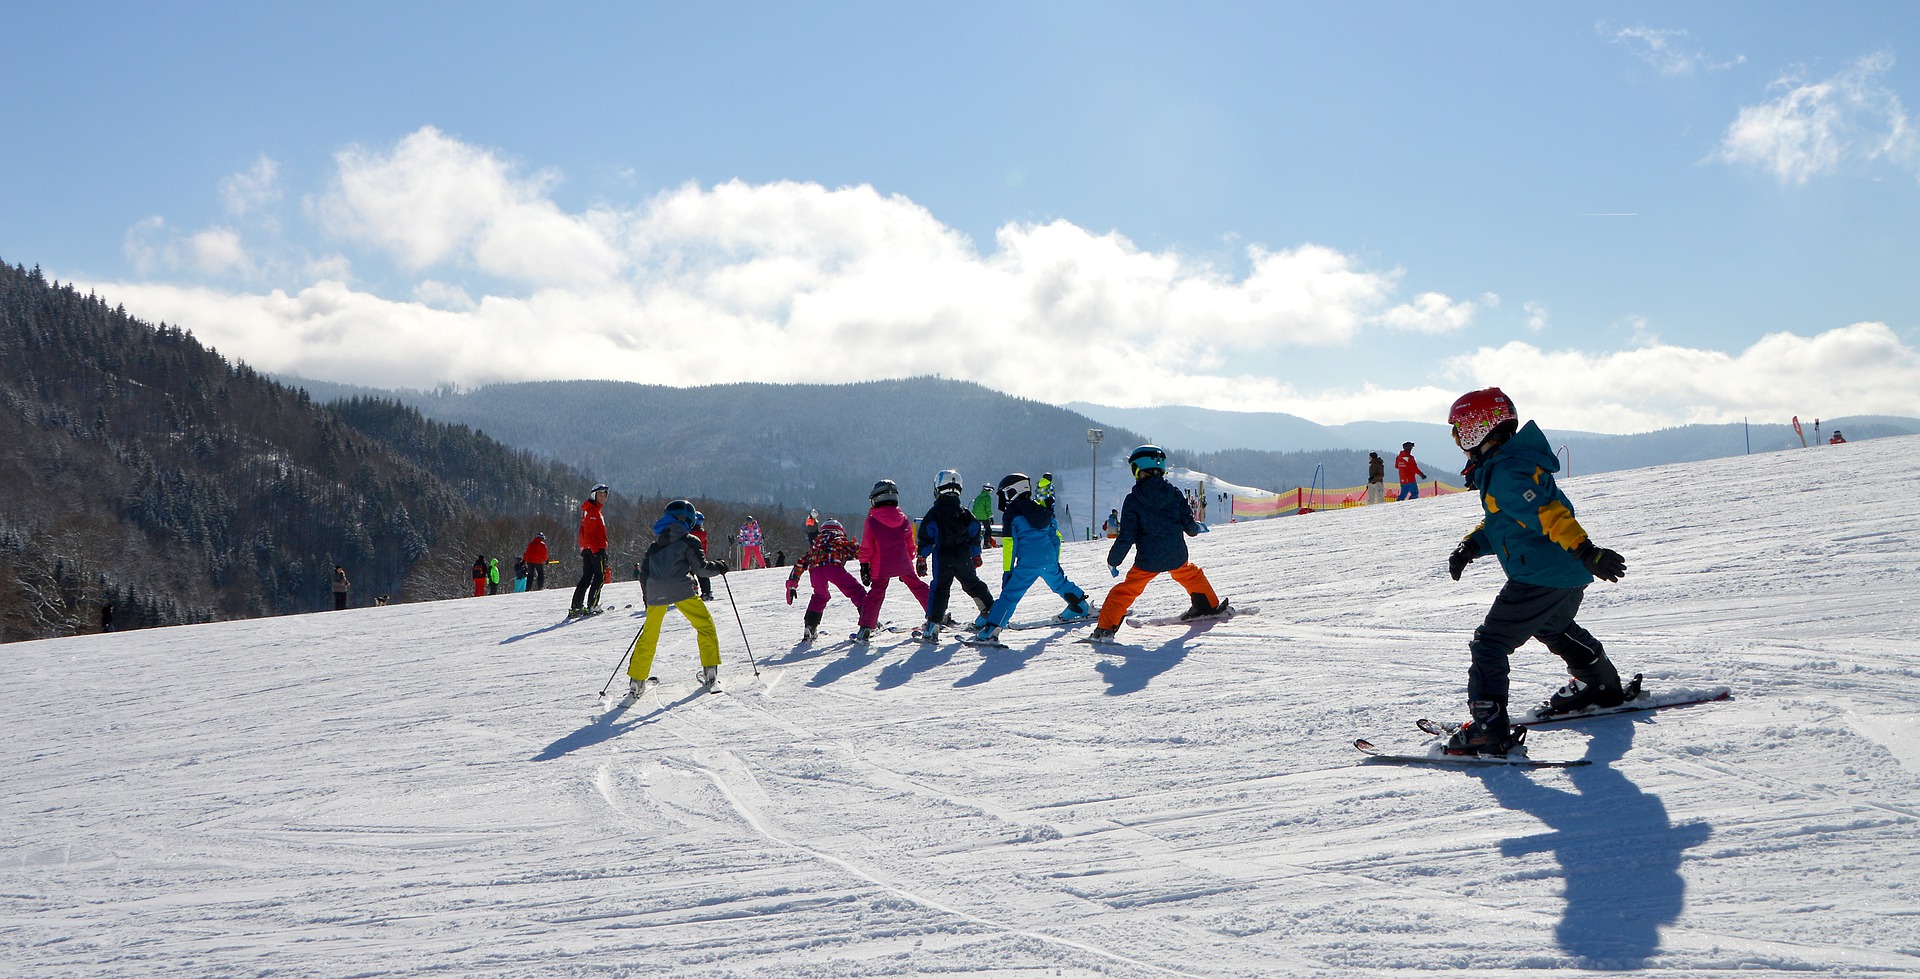 Kids in Ski School Skiing on Mountain